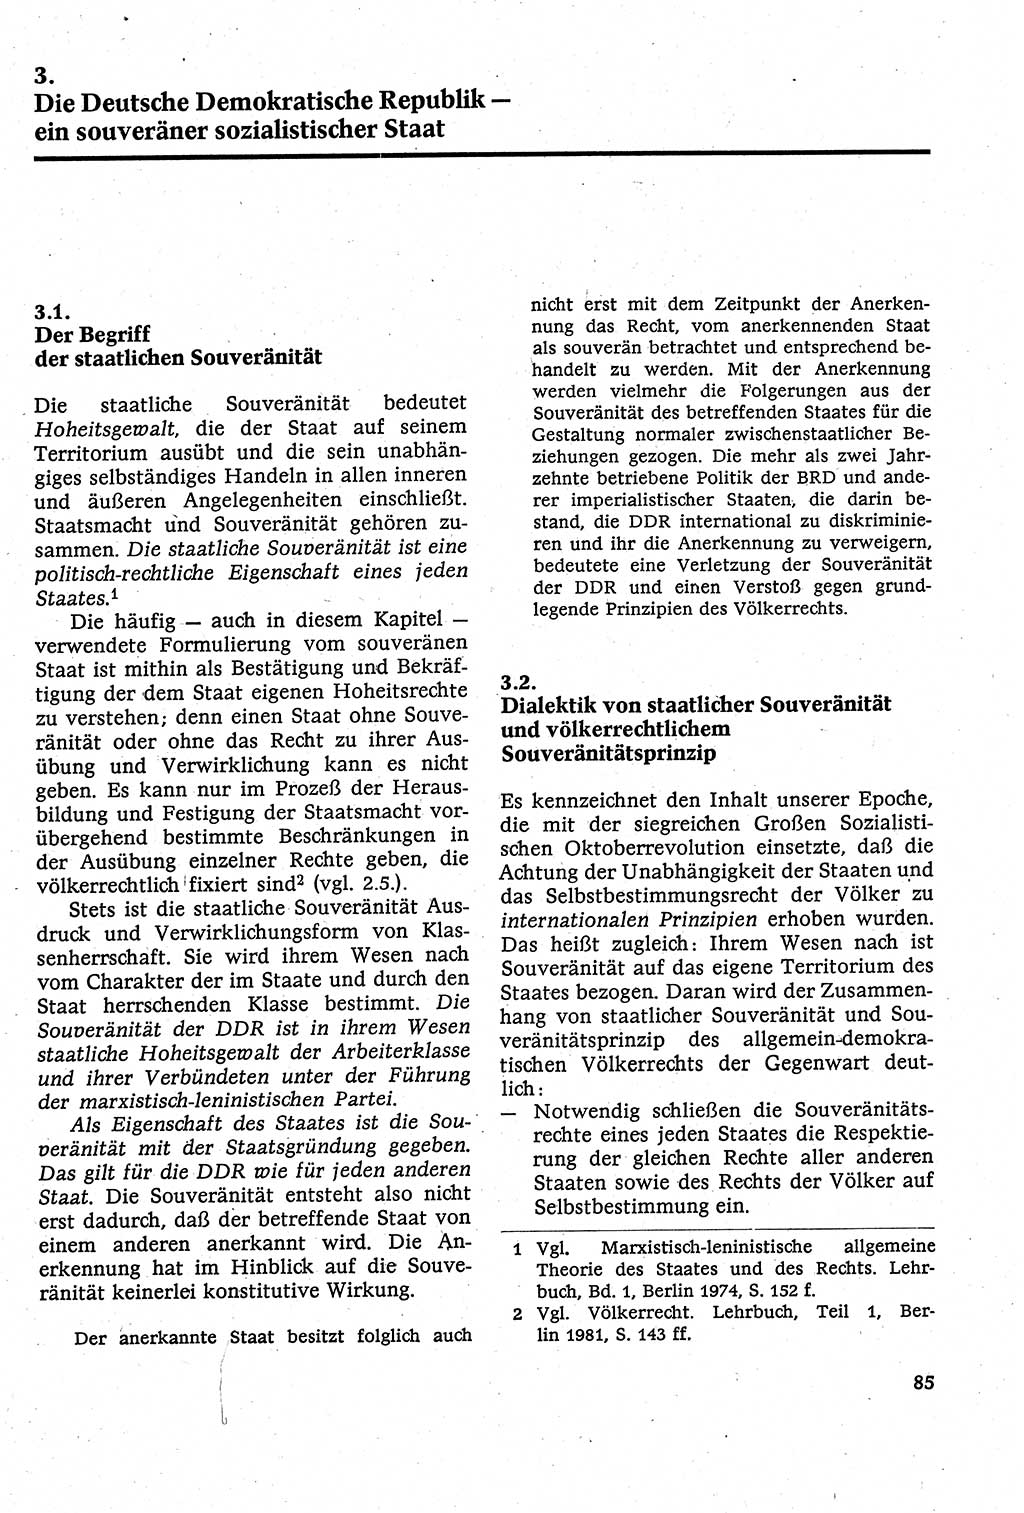 Staatsrecht der DDR [Deutsche Demokratische Republik (DDR)], Lehrbuch 1984, Seite 85 (St.-R. DDR Lb. 1984, S. 85)